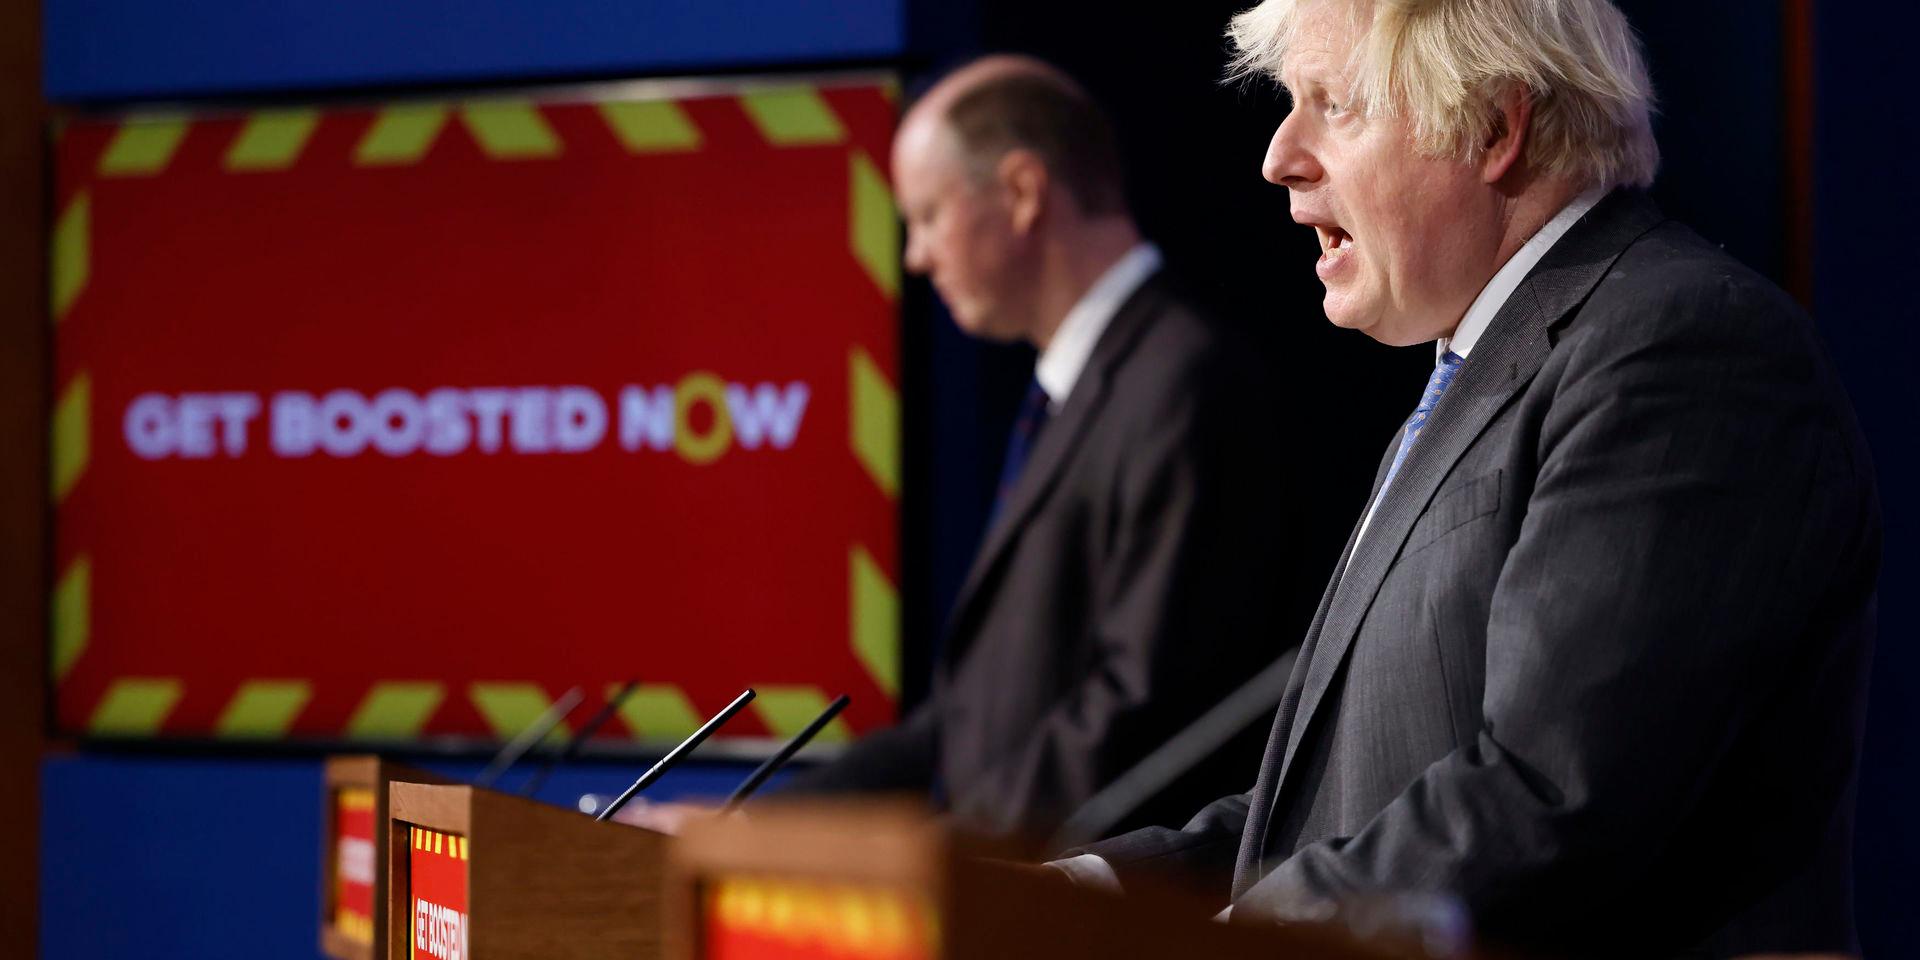 Boris Johnson (närmast kameran) och Chris Whitty på en presskonferens i förra veckan. Skylten uppmanar britterna att ta en tredje vaccinspruta.